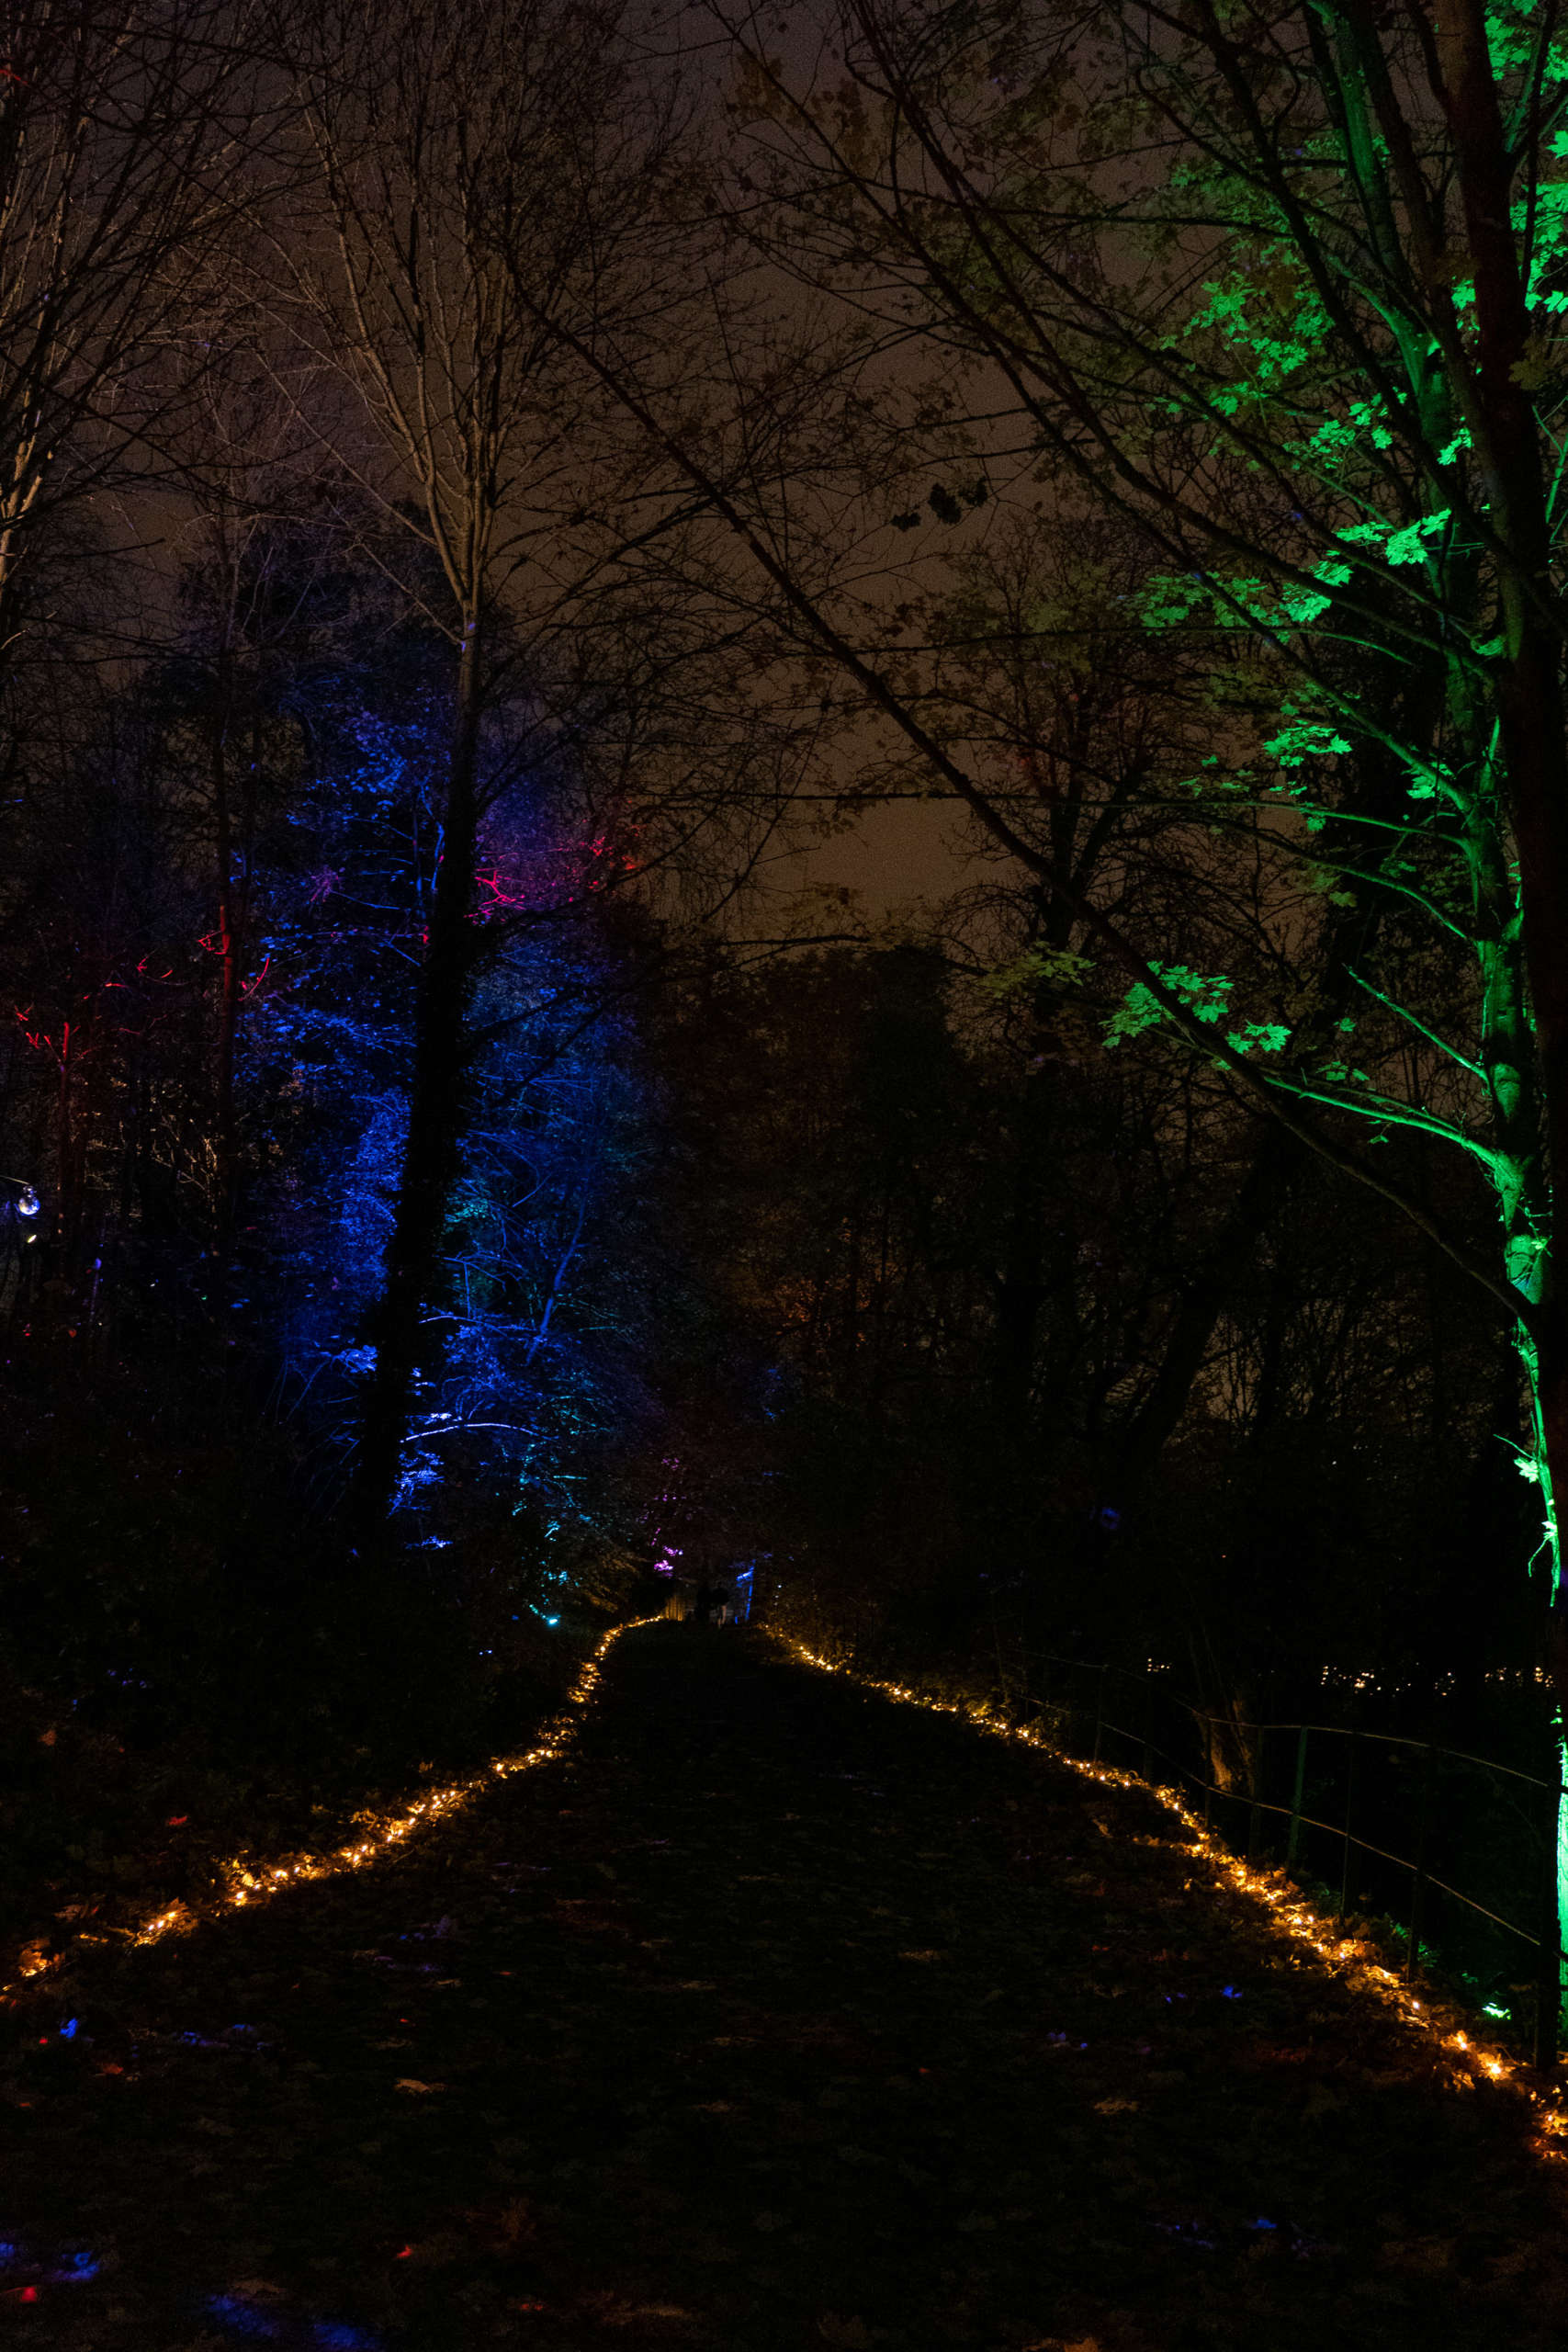 Illuminations Parc de St Cloud